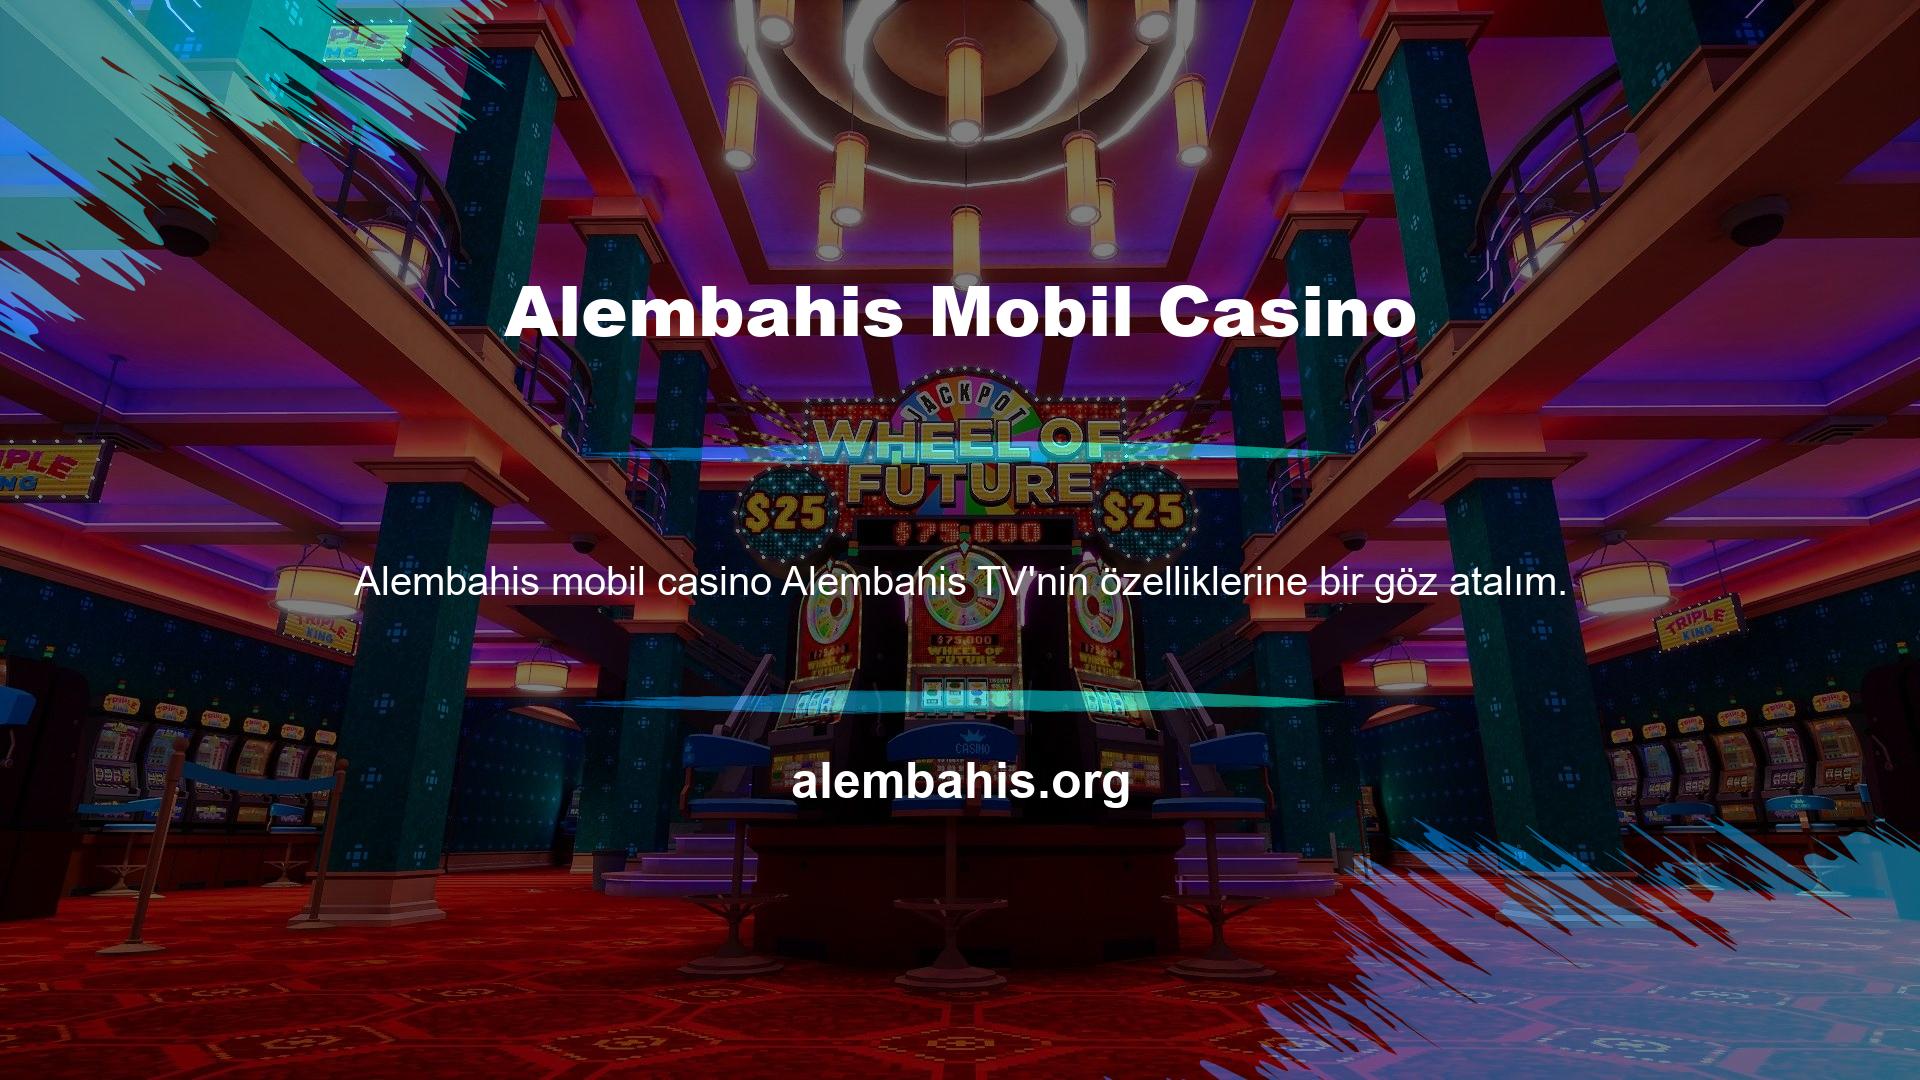 Bu özellik, Alembahis Game mobil casino web sitesi üzerinden spor müsabakalarını izlemenize olanak sağlayan bir uygulama olan sistemi ifade etmektedir